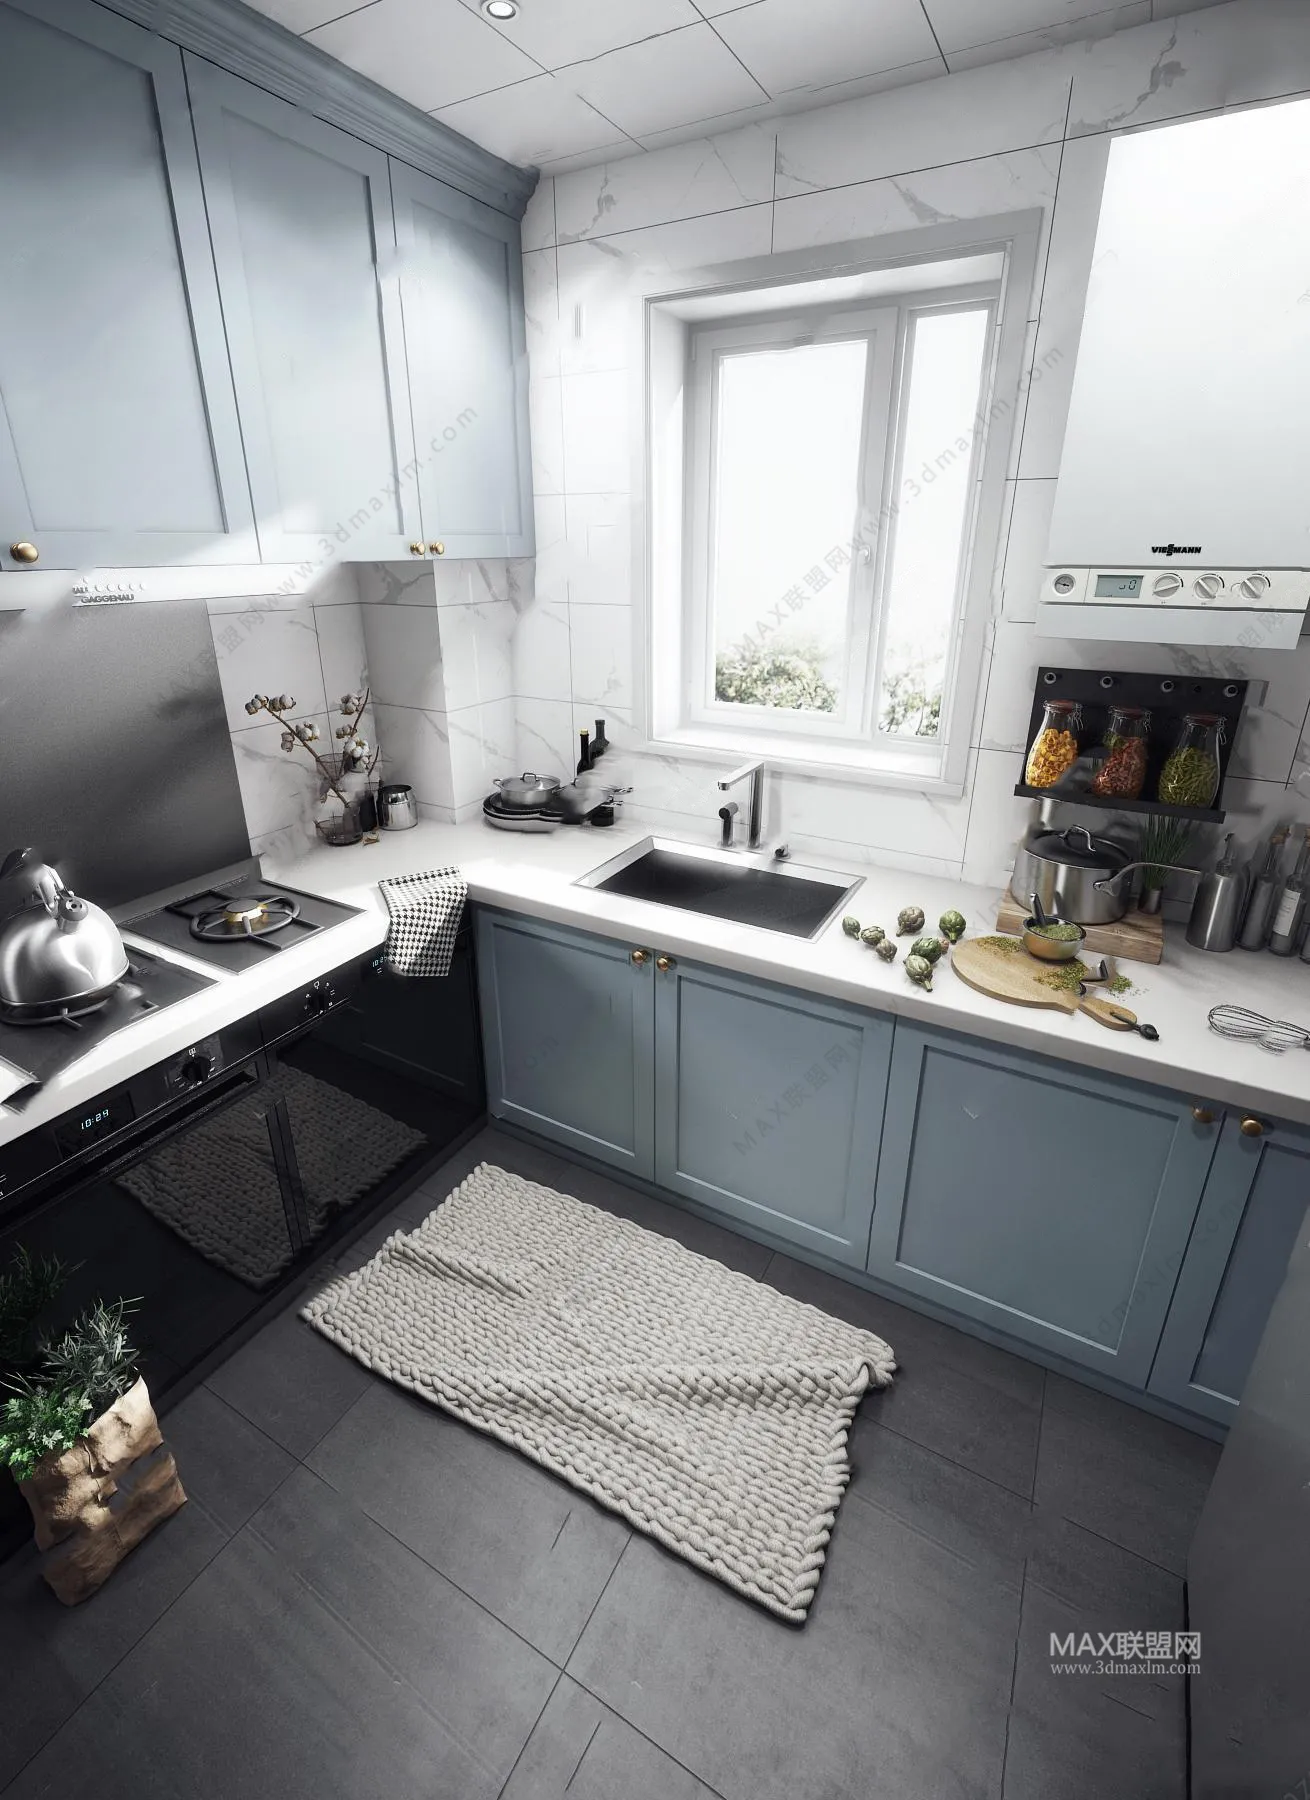 Kitchen – Interior Design – Modern Design – 030